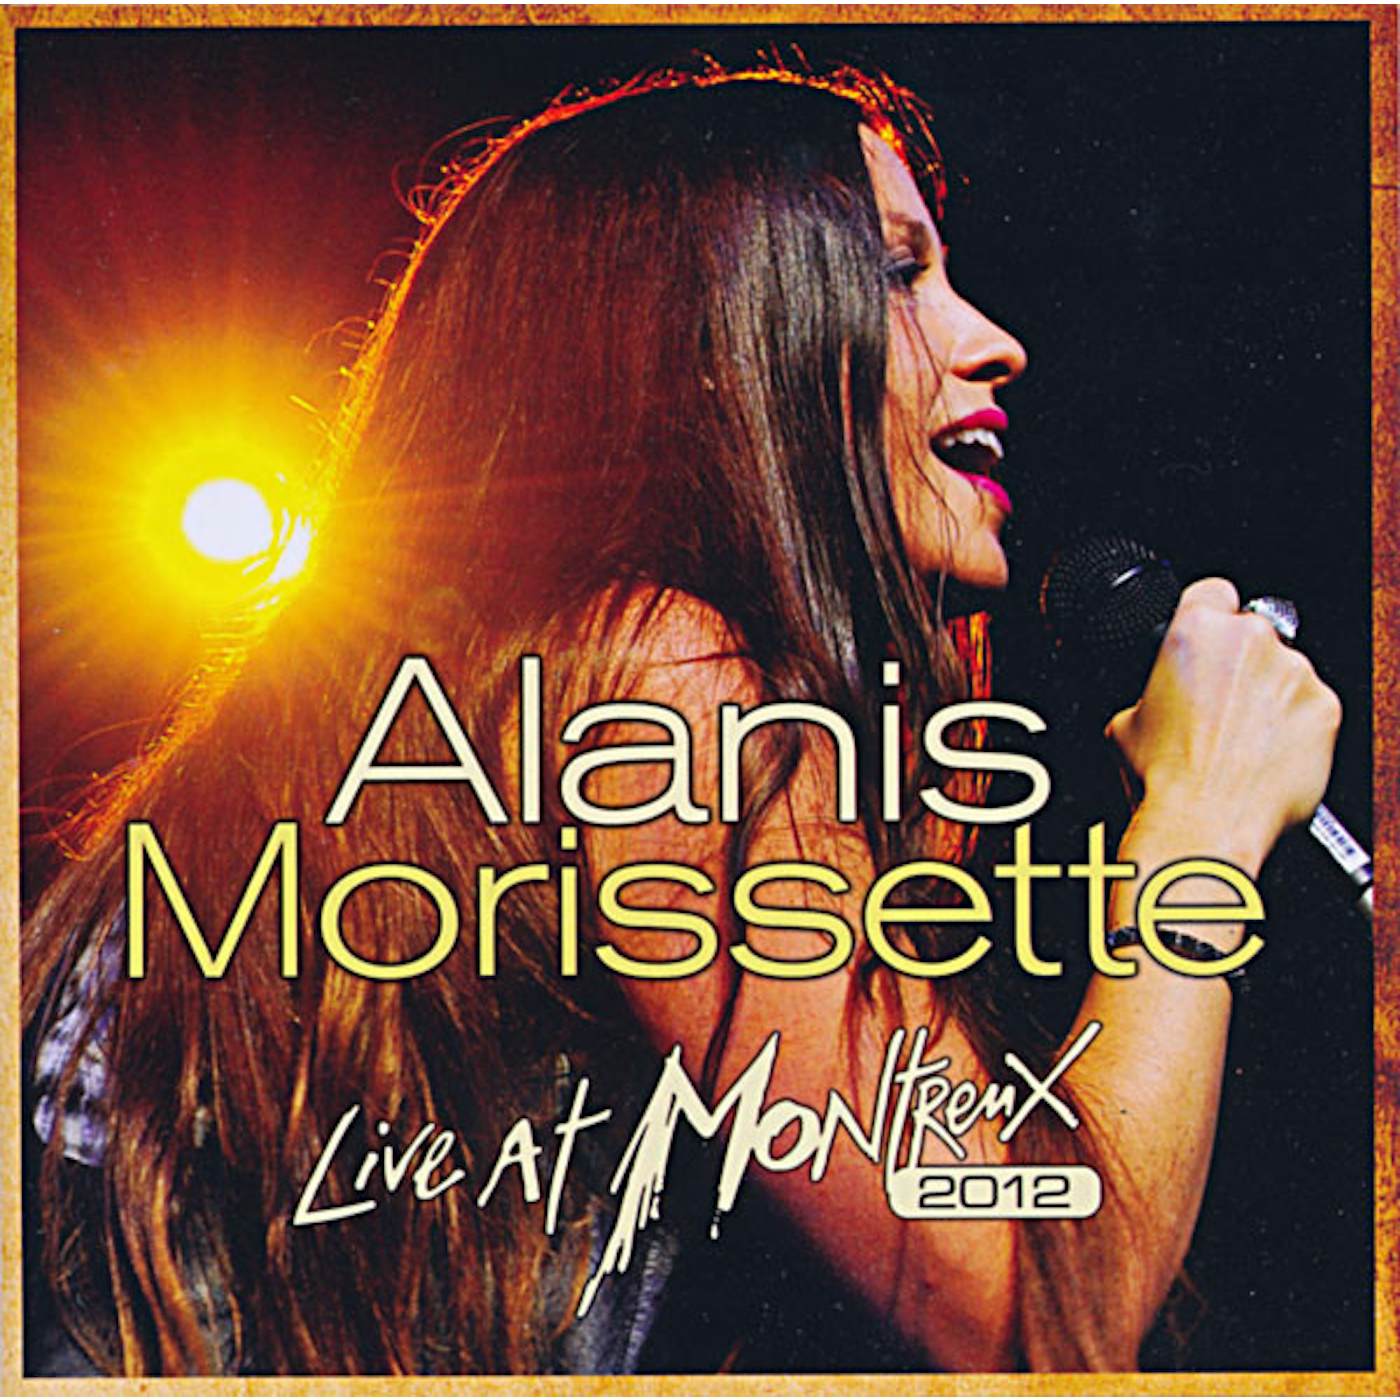 Alanis Morissette Live At Montreux 2012 Vinyl Record